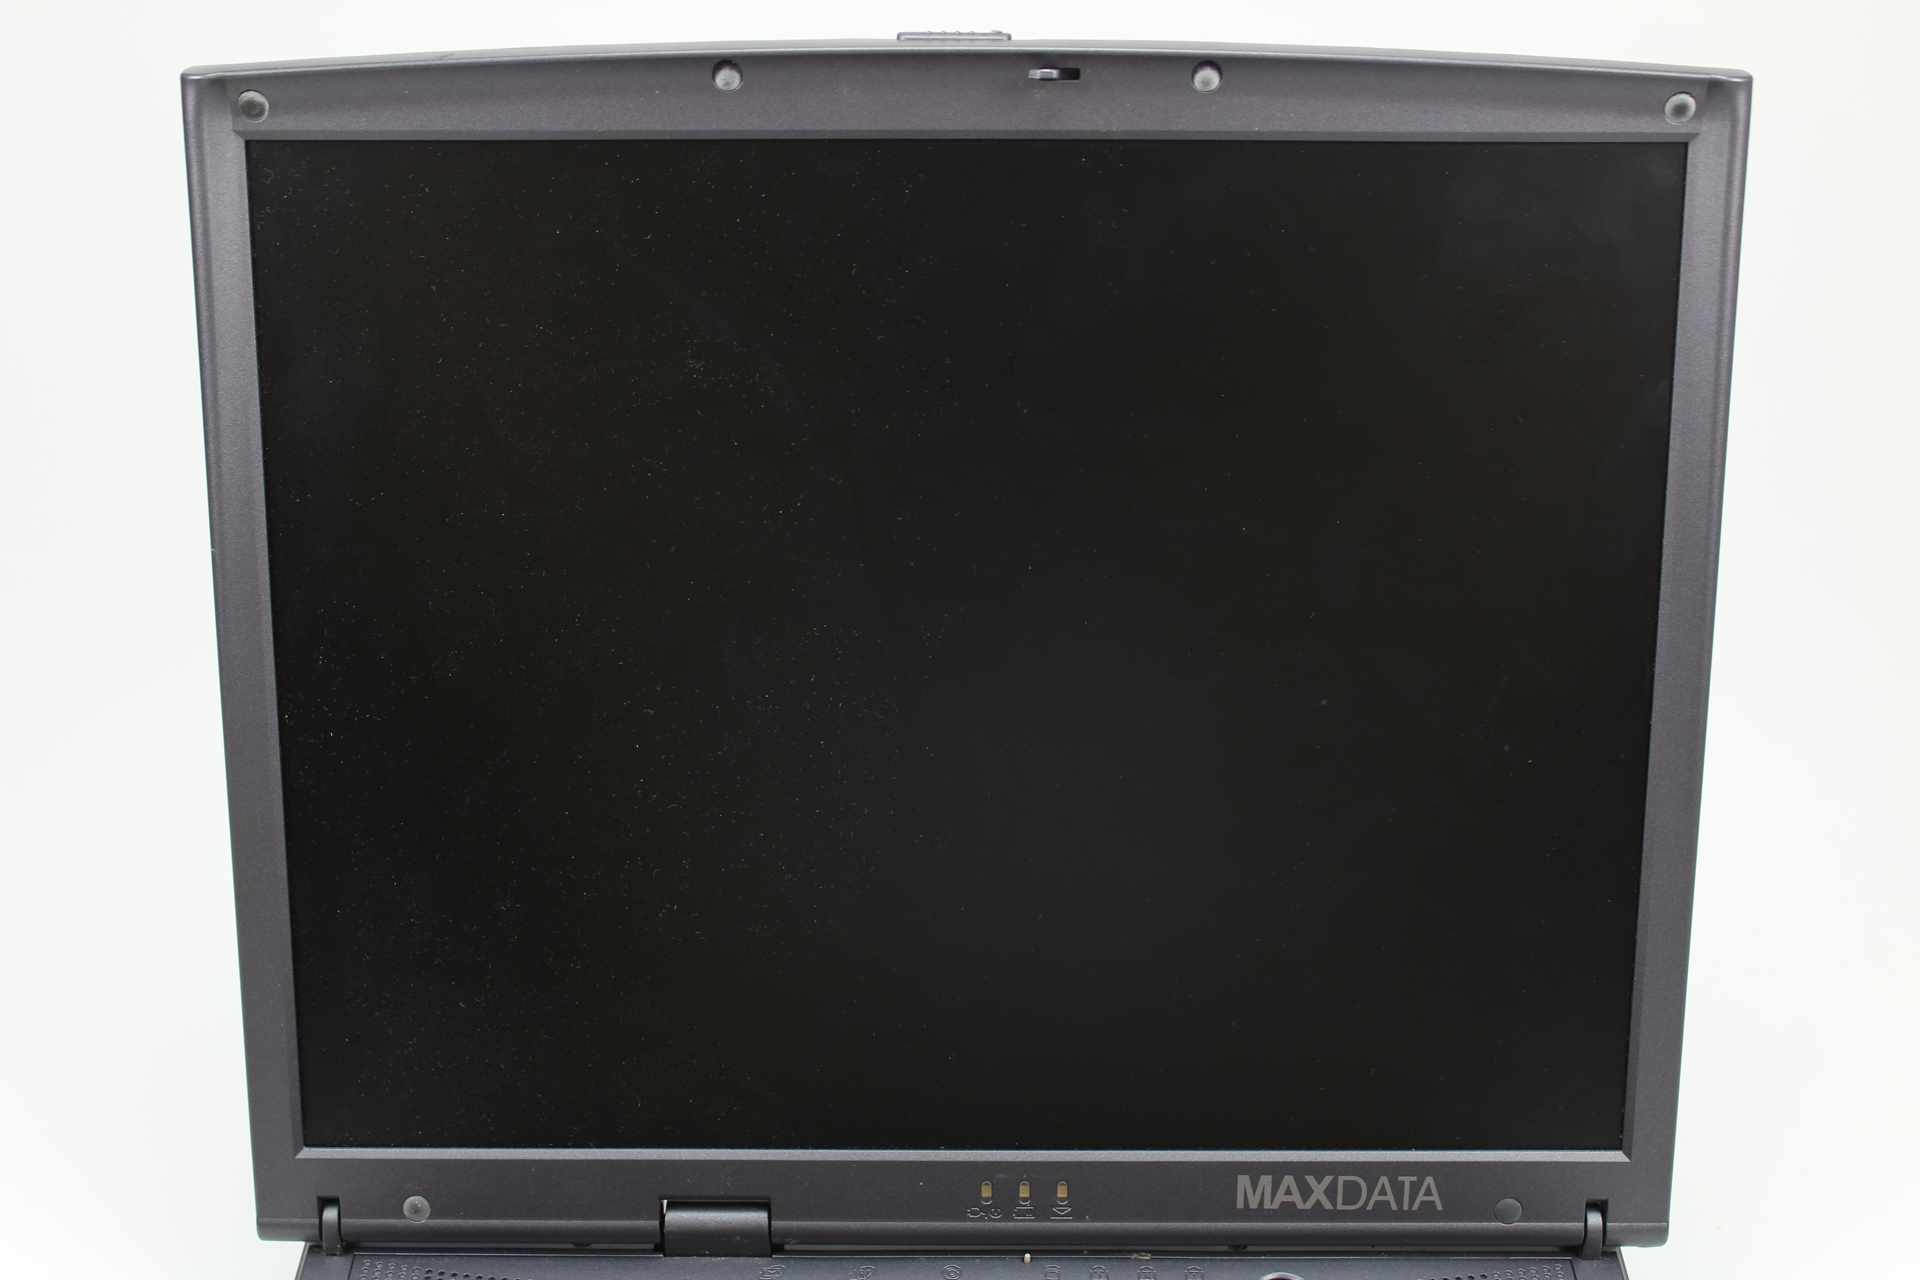 Maxdata Pro 660X